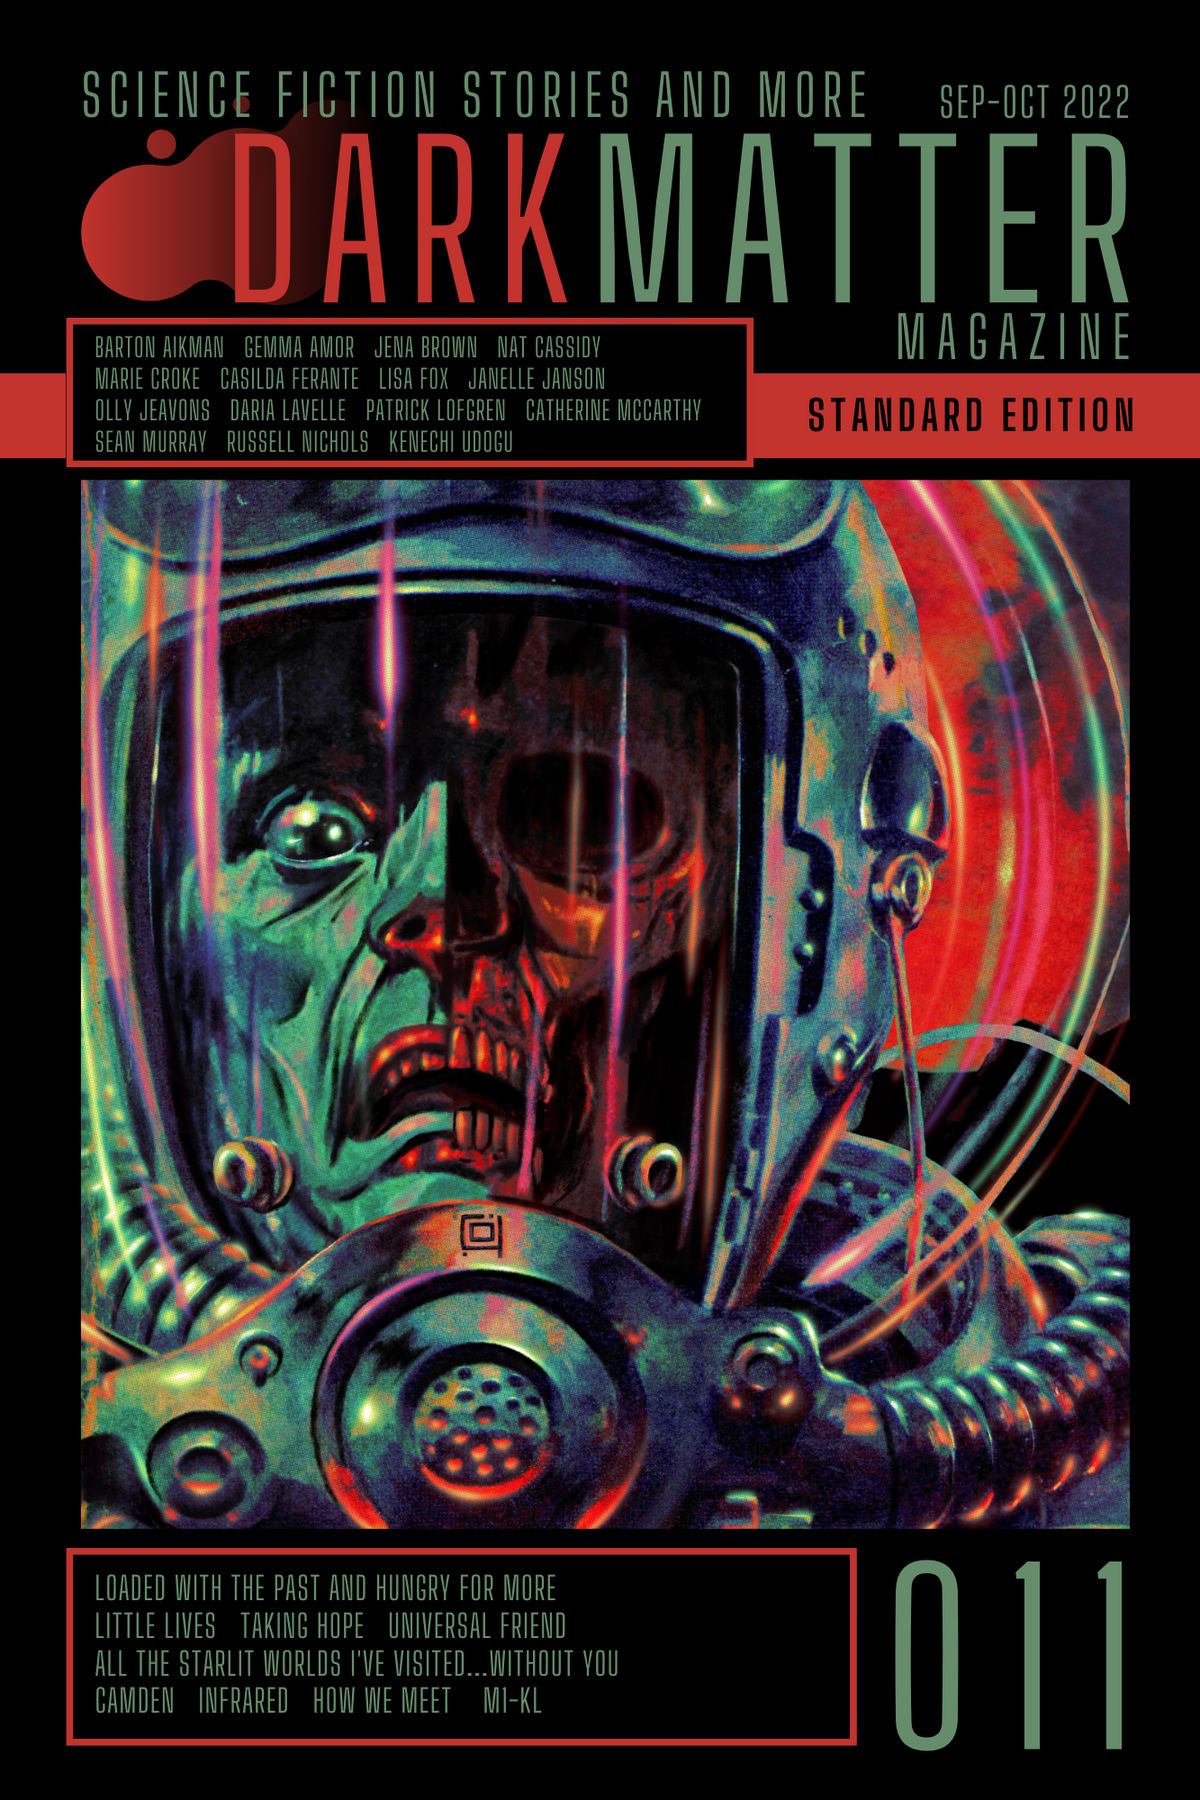 Dark Matter Magazine Issue 011 Sep-Oct 2022